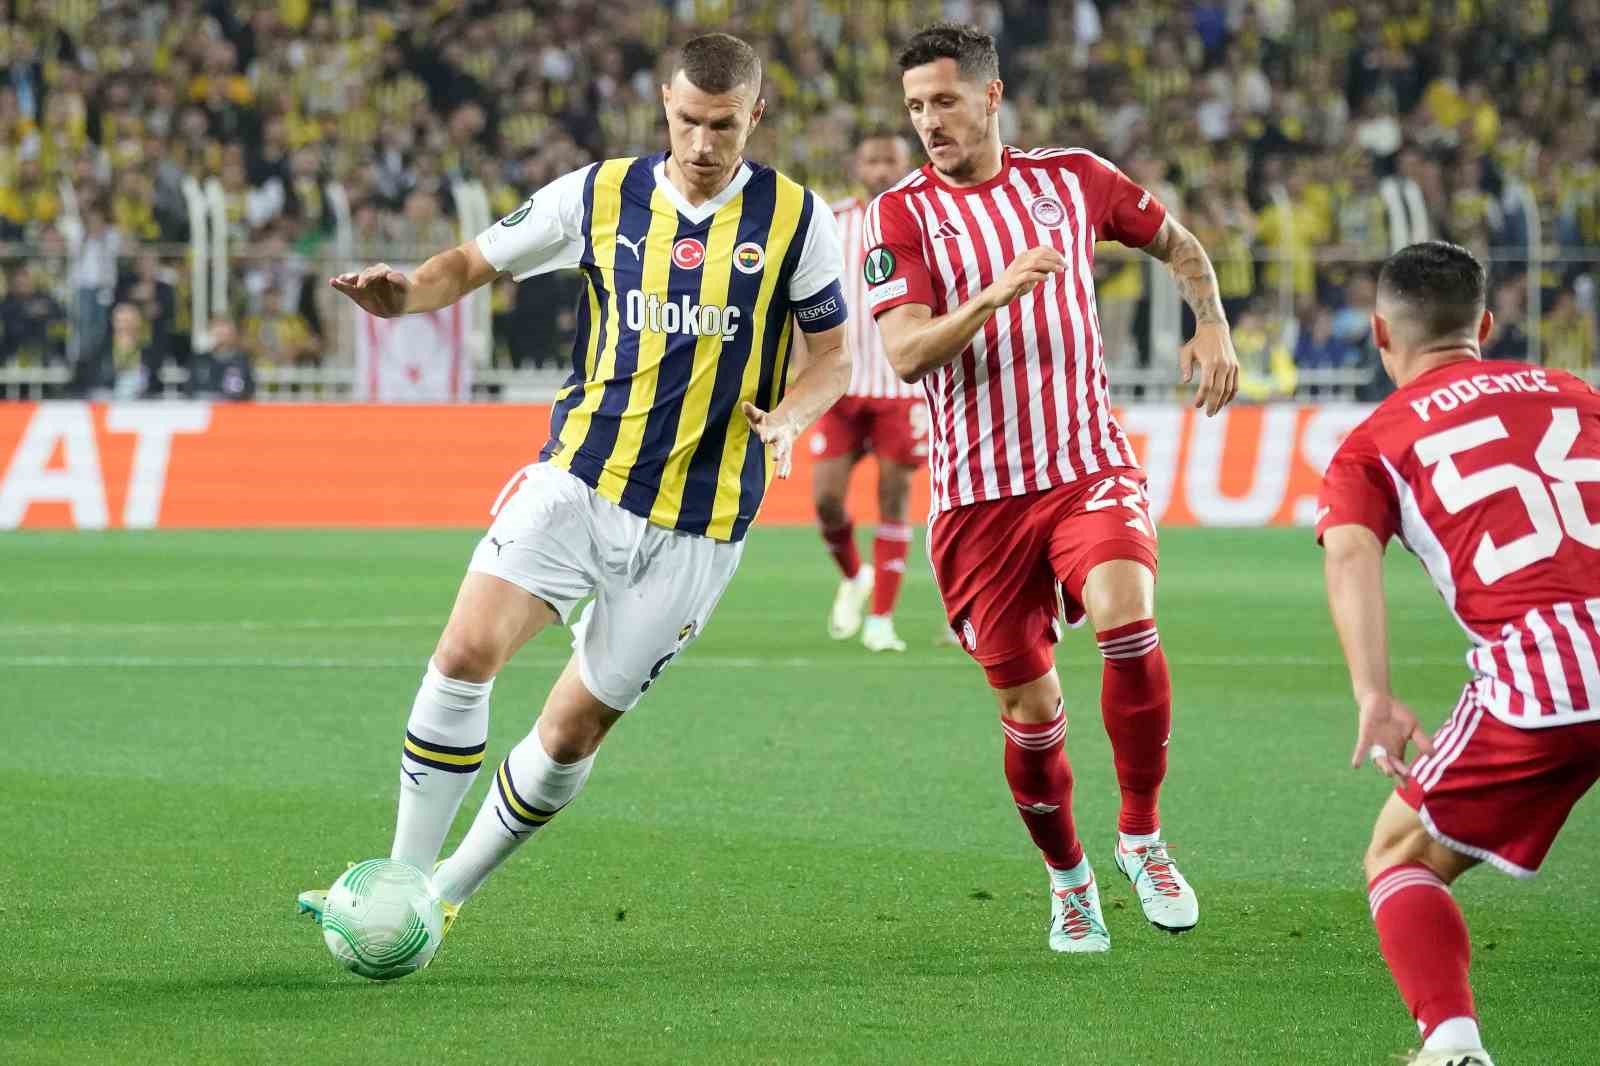 UEFA Avrupa Konferans Ligi: Fenerbahçe: 1 - Olympiakos: 0 (Maç devam ediyor)
